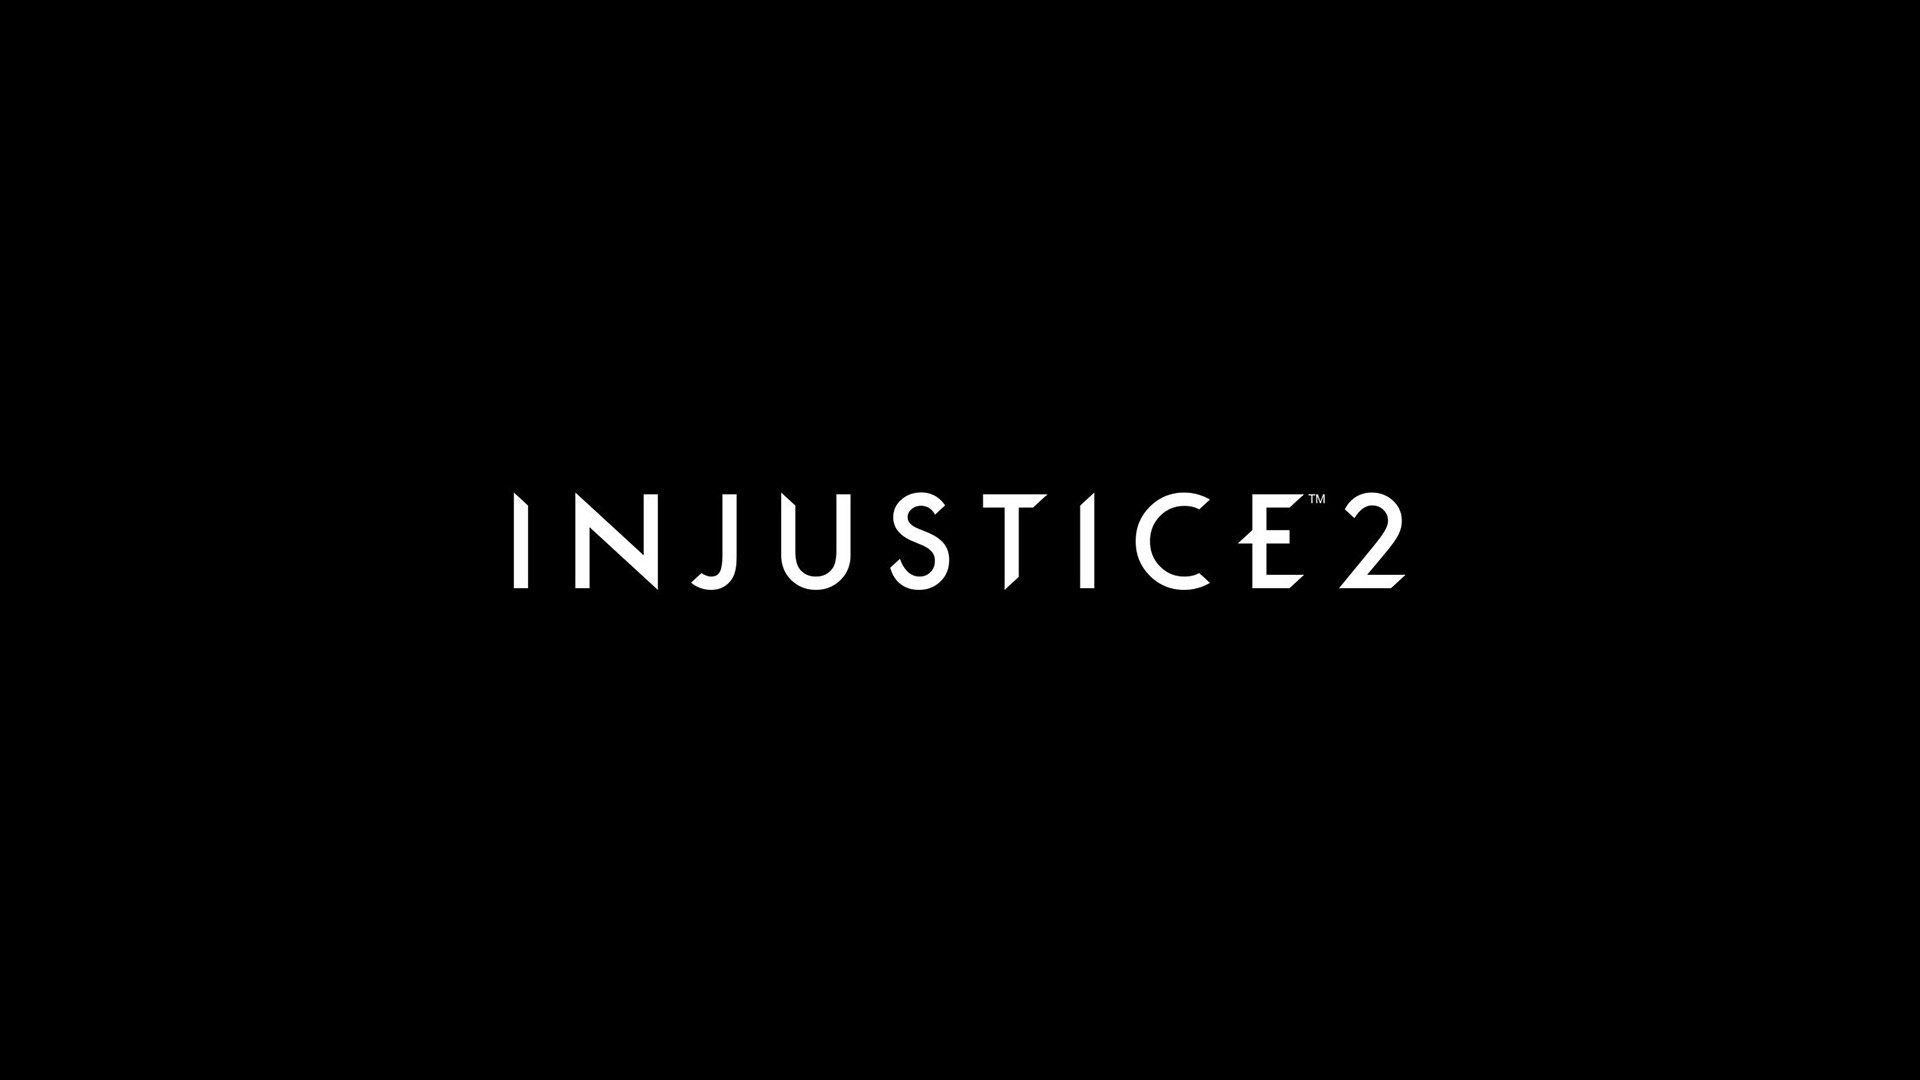 Скачать обои бесплатно Видеоигры, Лого, Несправедливость 2, Несправедливость: Боги Среди Нас картинка на рабочий стол ПК